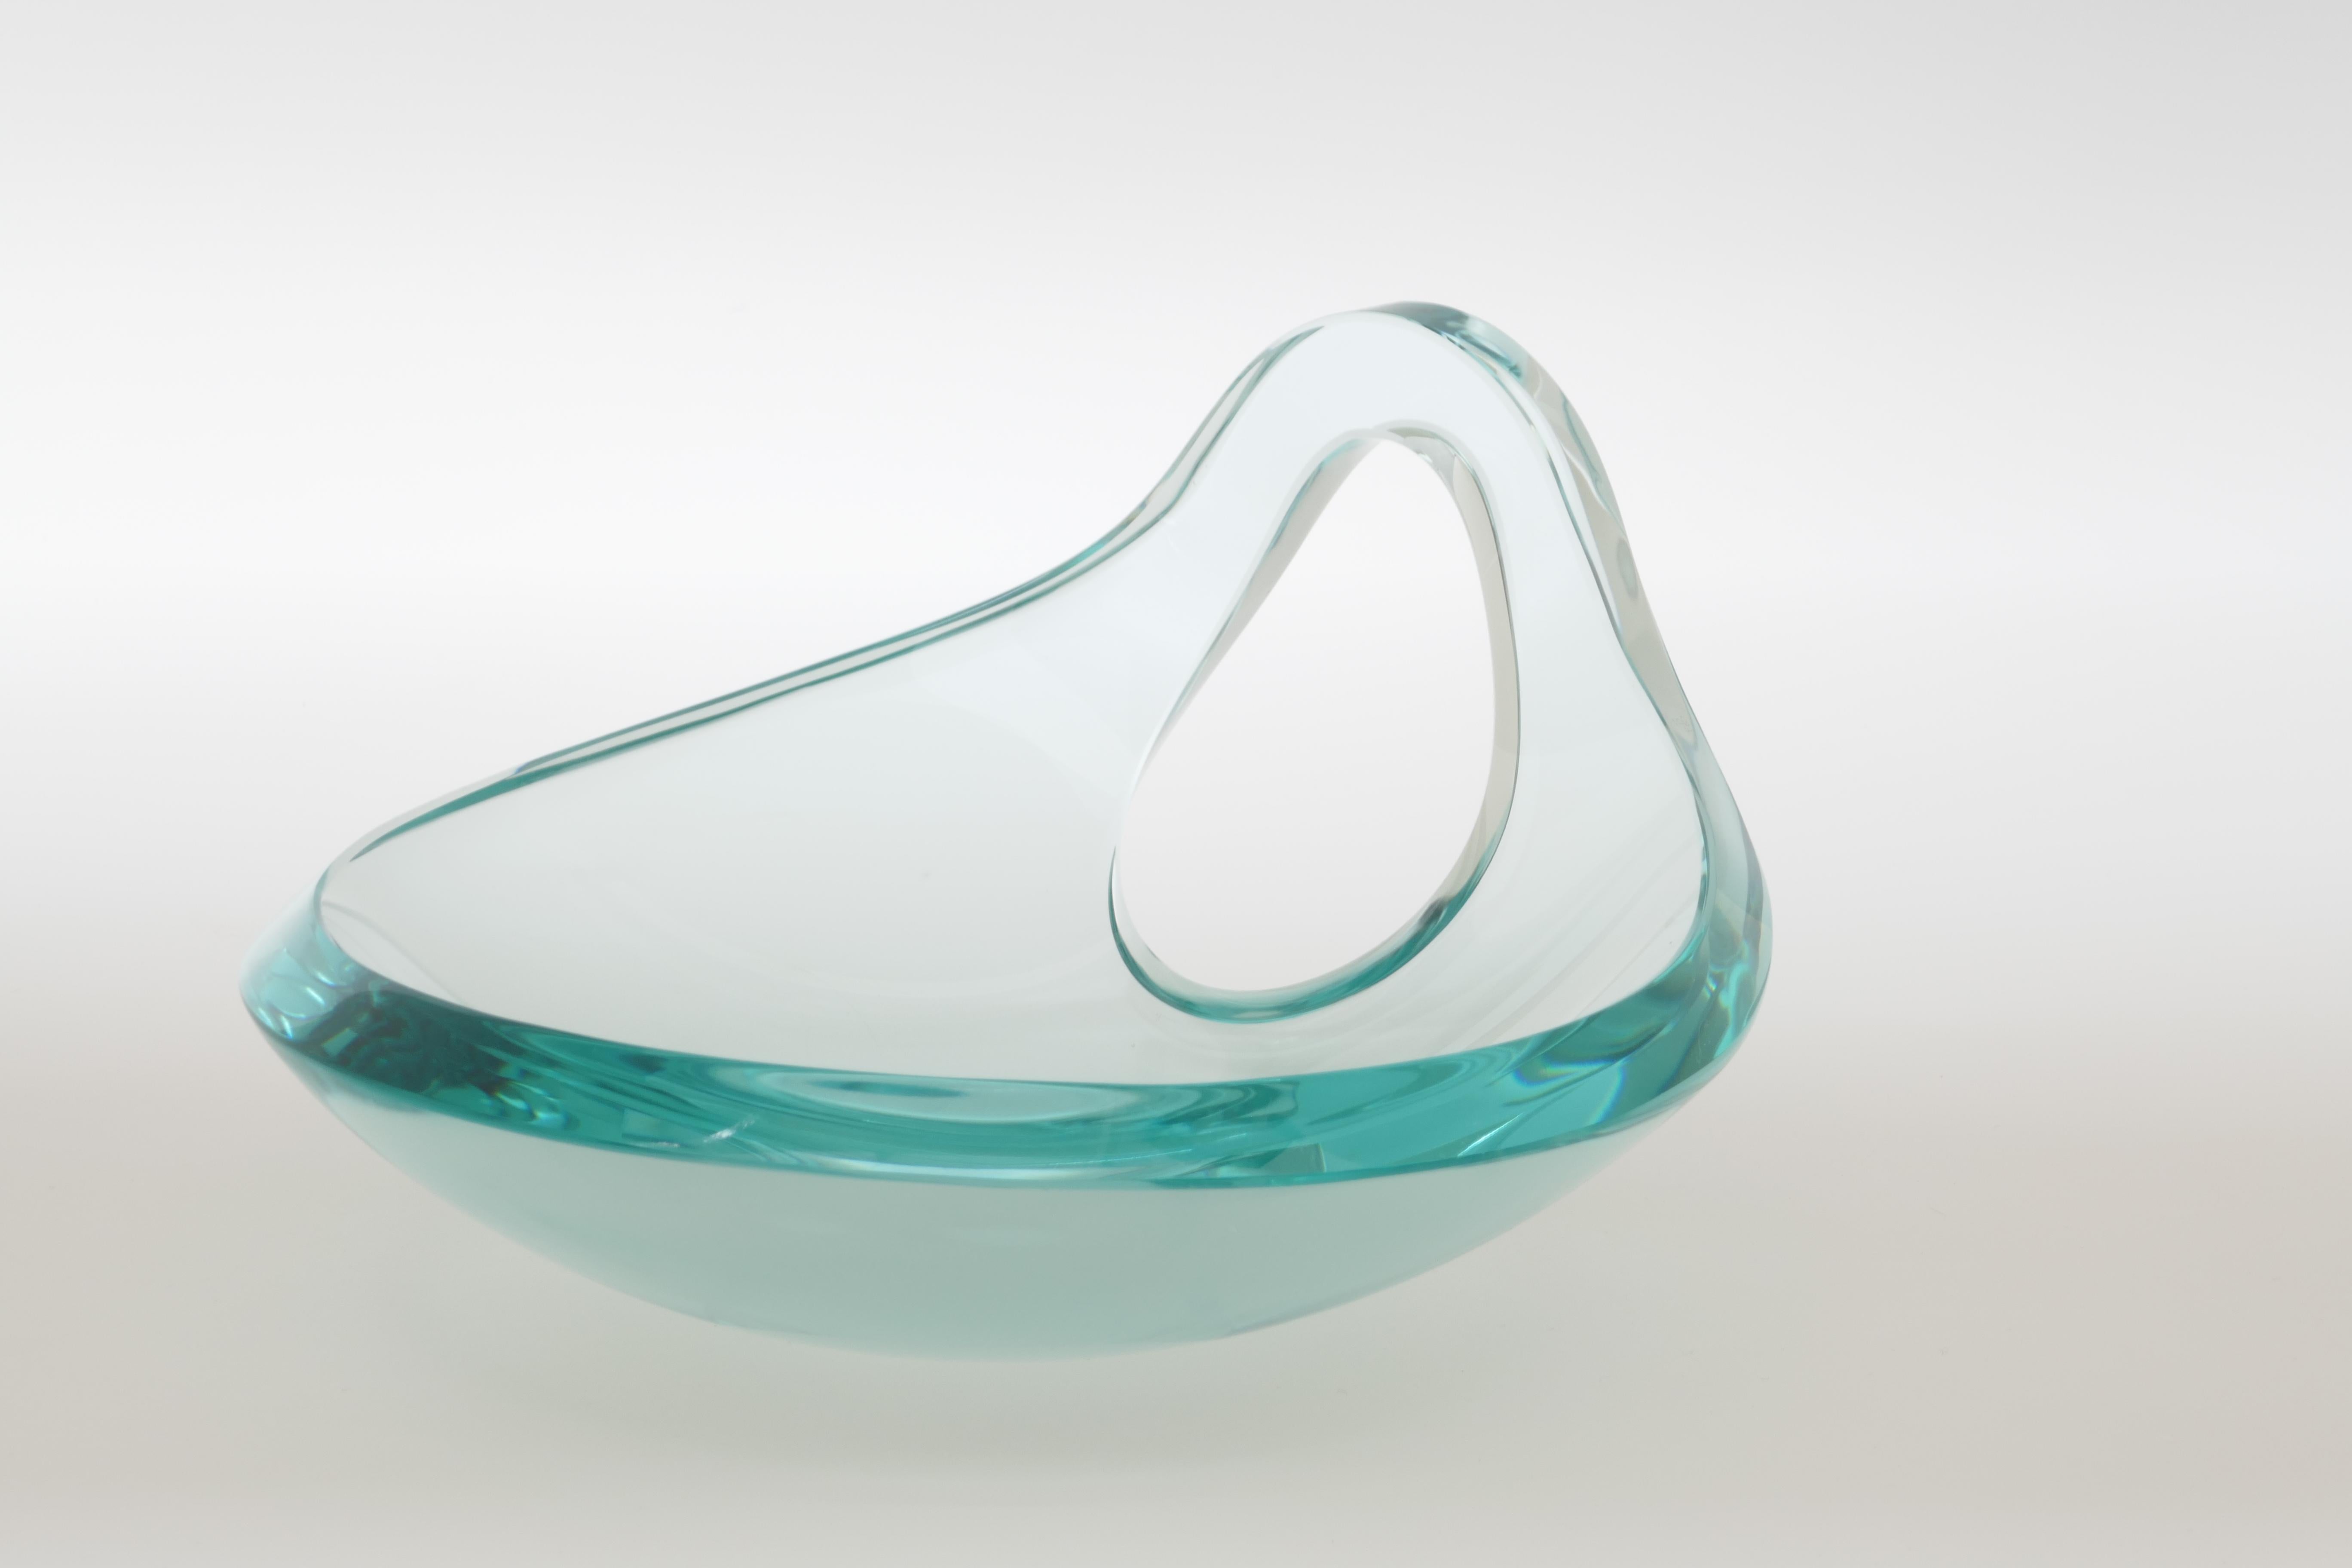 Giorgio Berlini art glass centerpiece/ Vide Poche or bowl, Italy, 1960s.